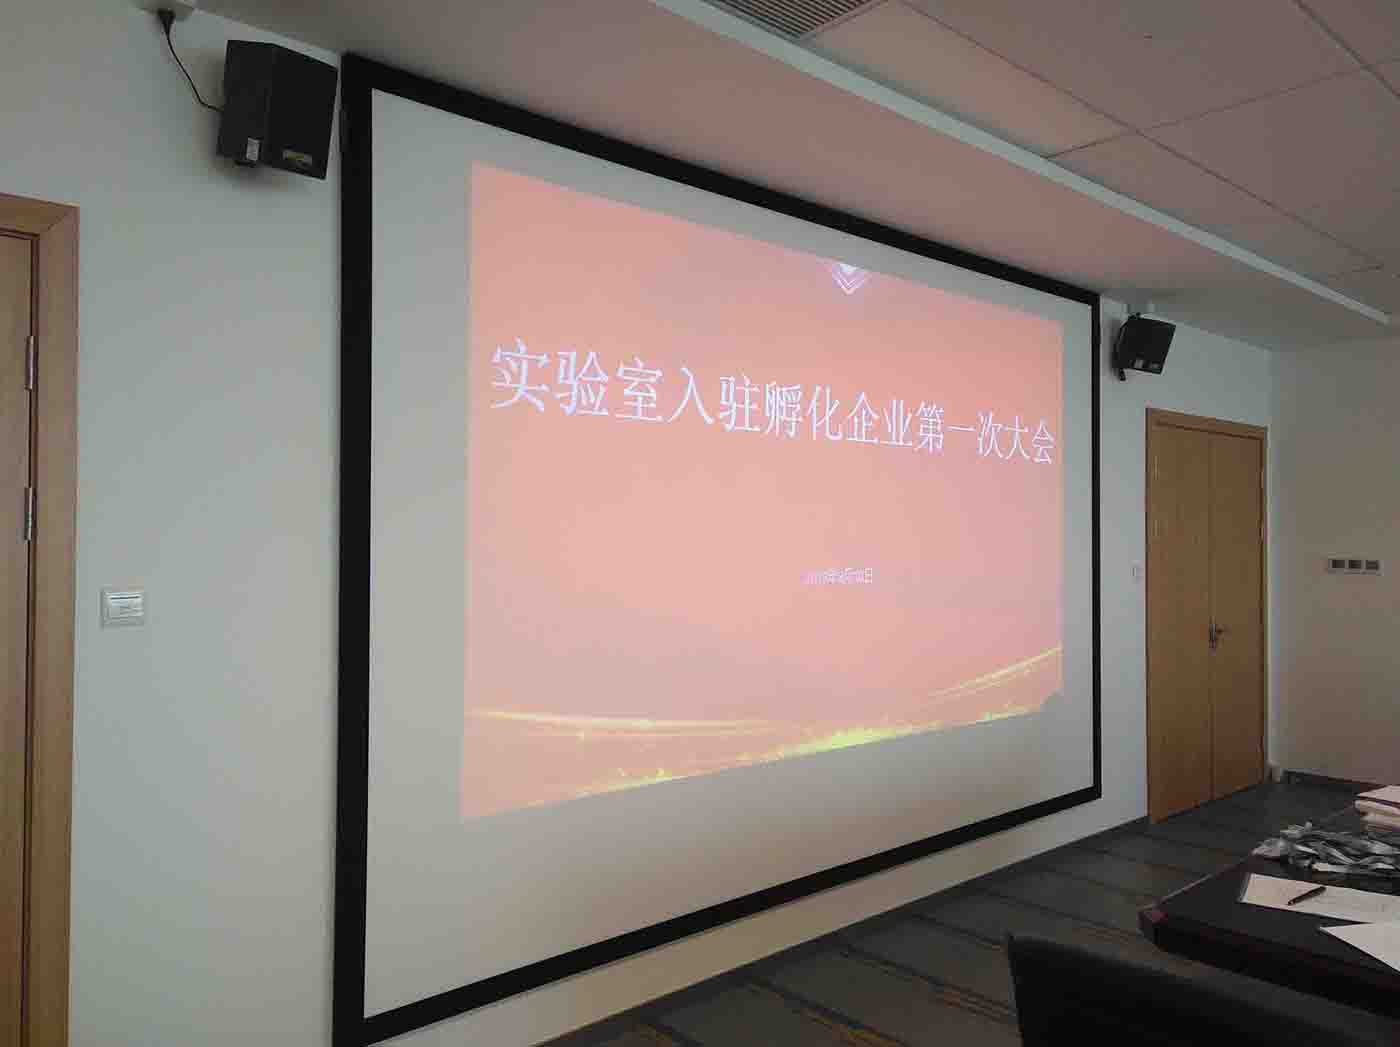 钱塘江金融港湾金融科技实验室入驻孵化企业第一次全体大会